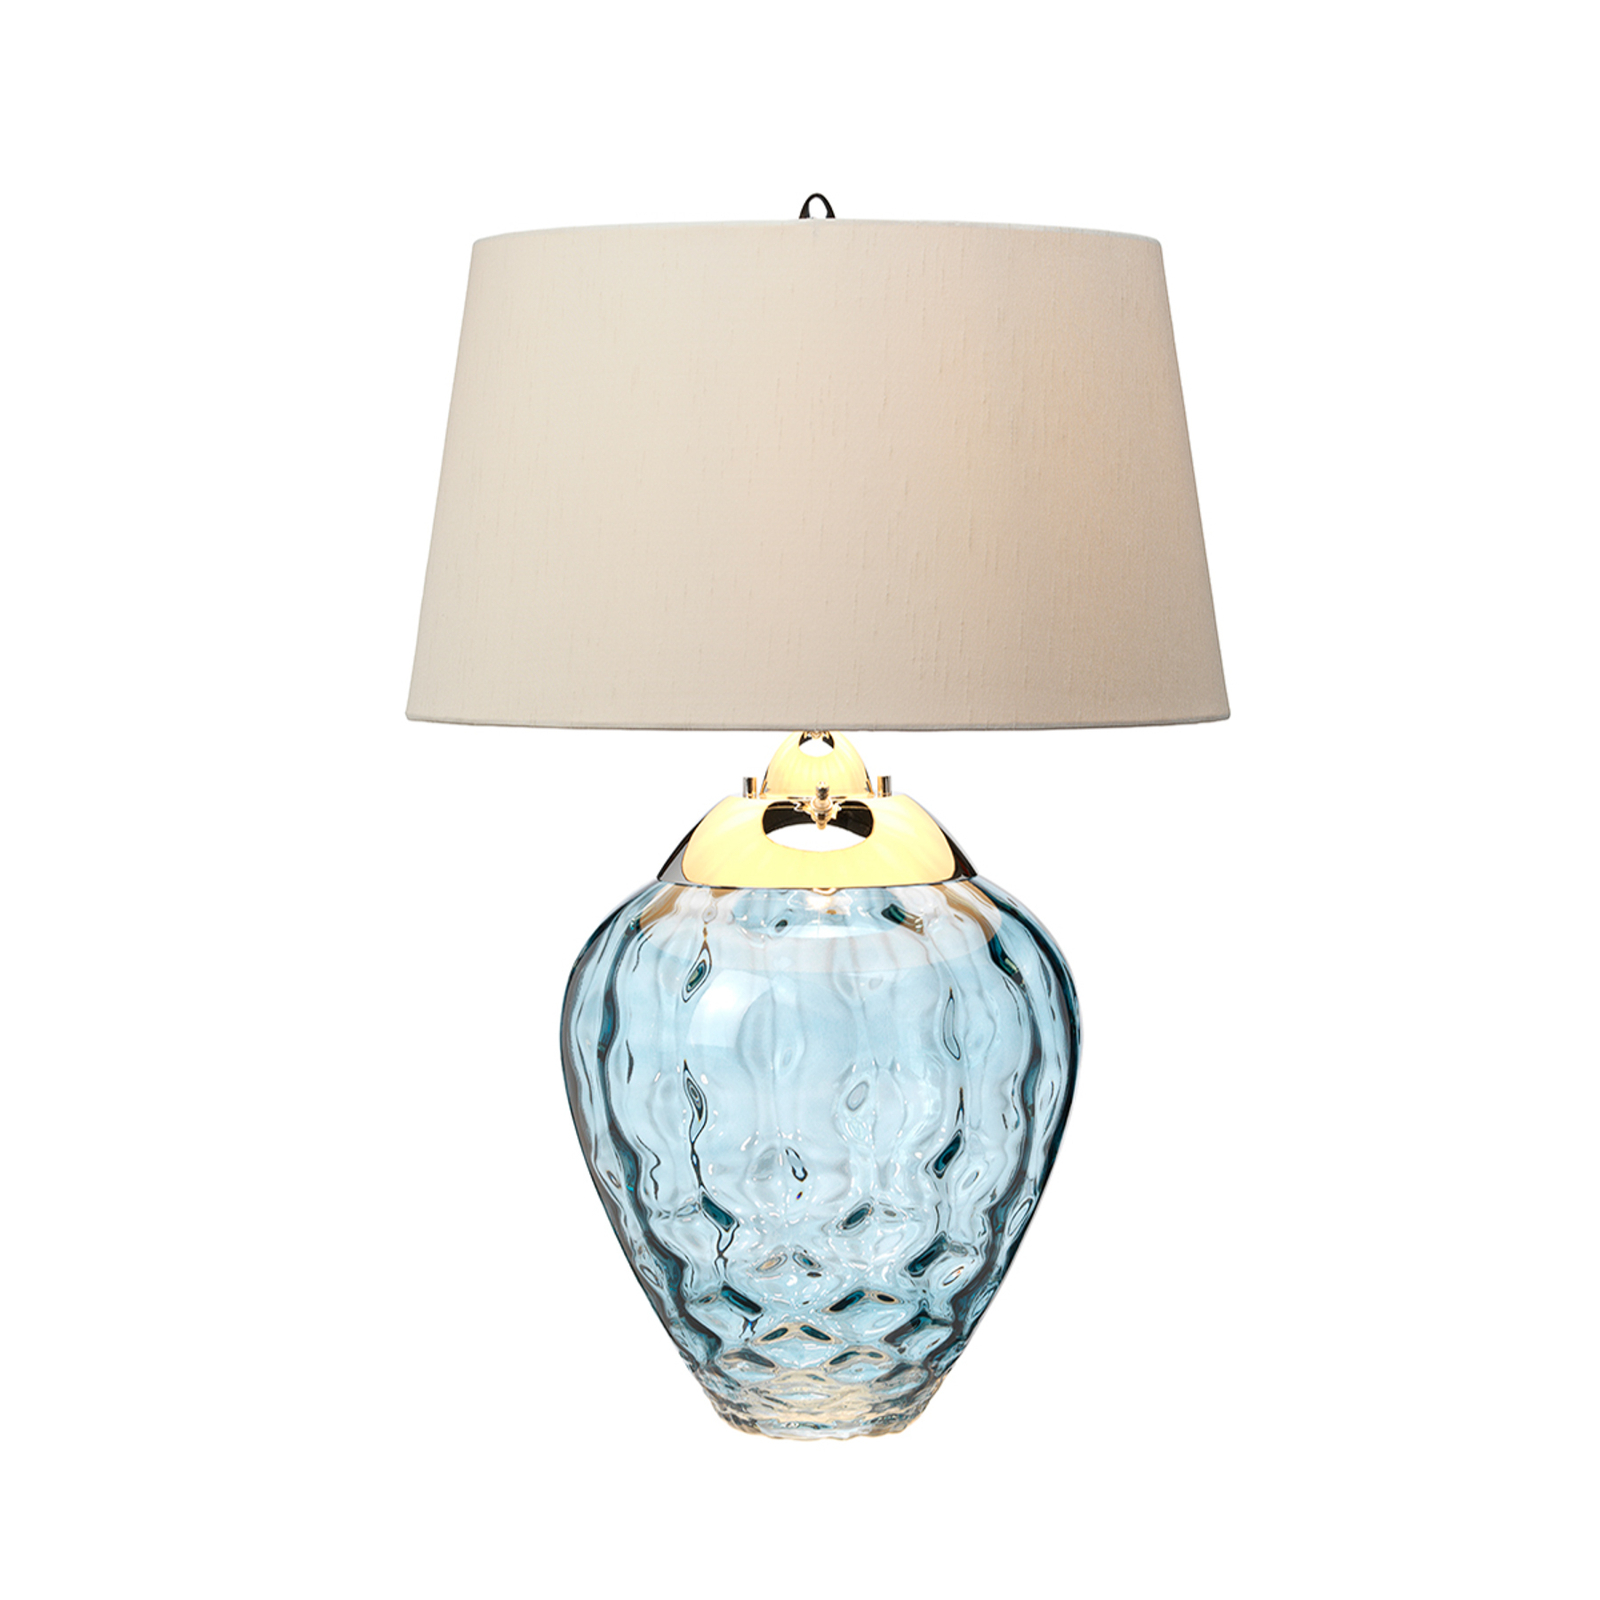 Samara tafellamp, Ø 45,7 cm, blauw, stof, glas, 2-lamps